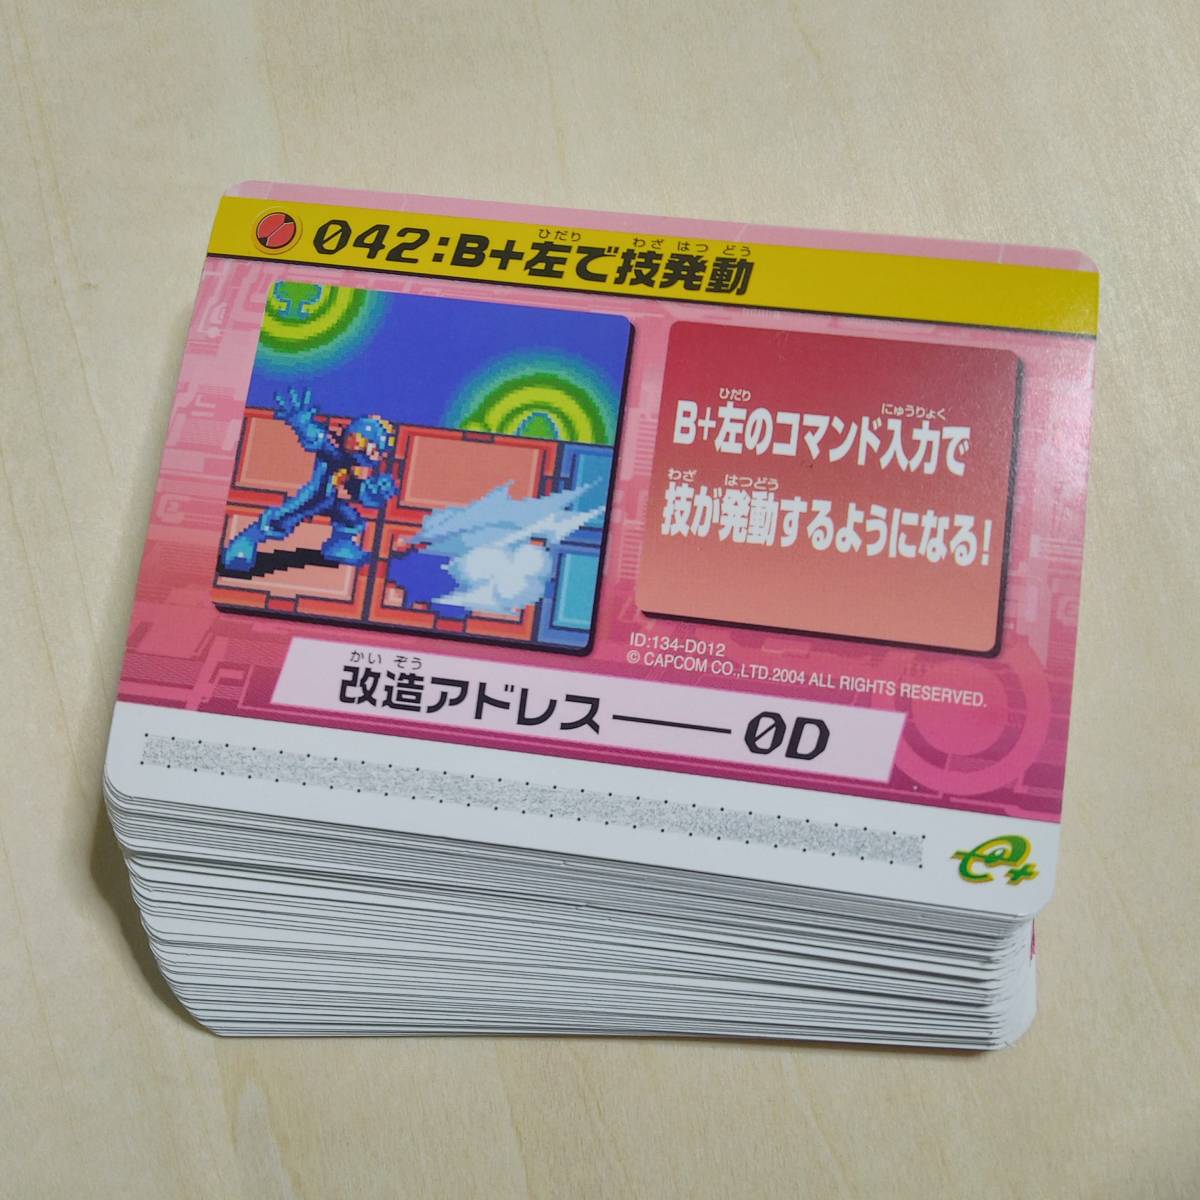 ロックマンエグゼ4 改造カード Part2 042:B+左で技発動 60枚 まとめ売り_画像1